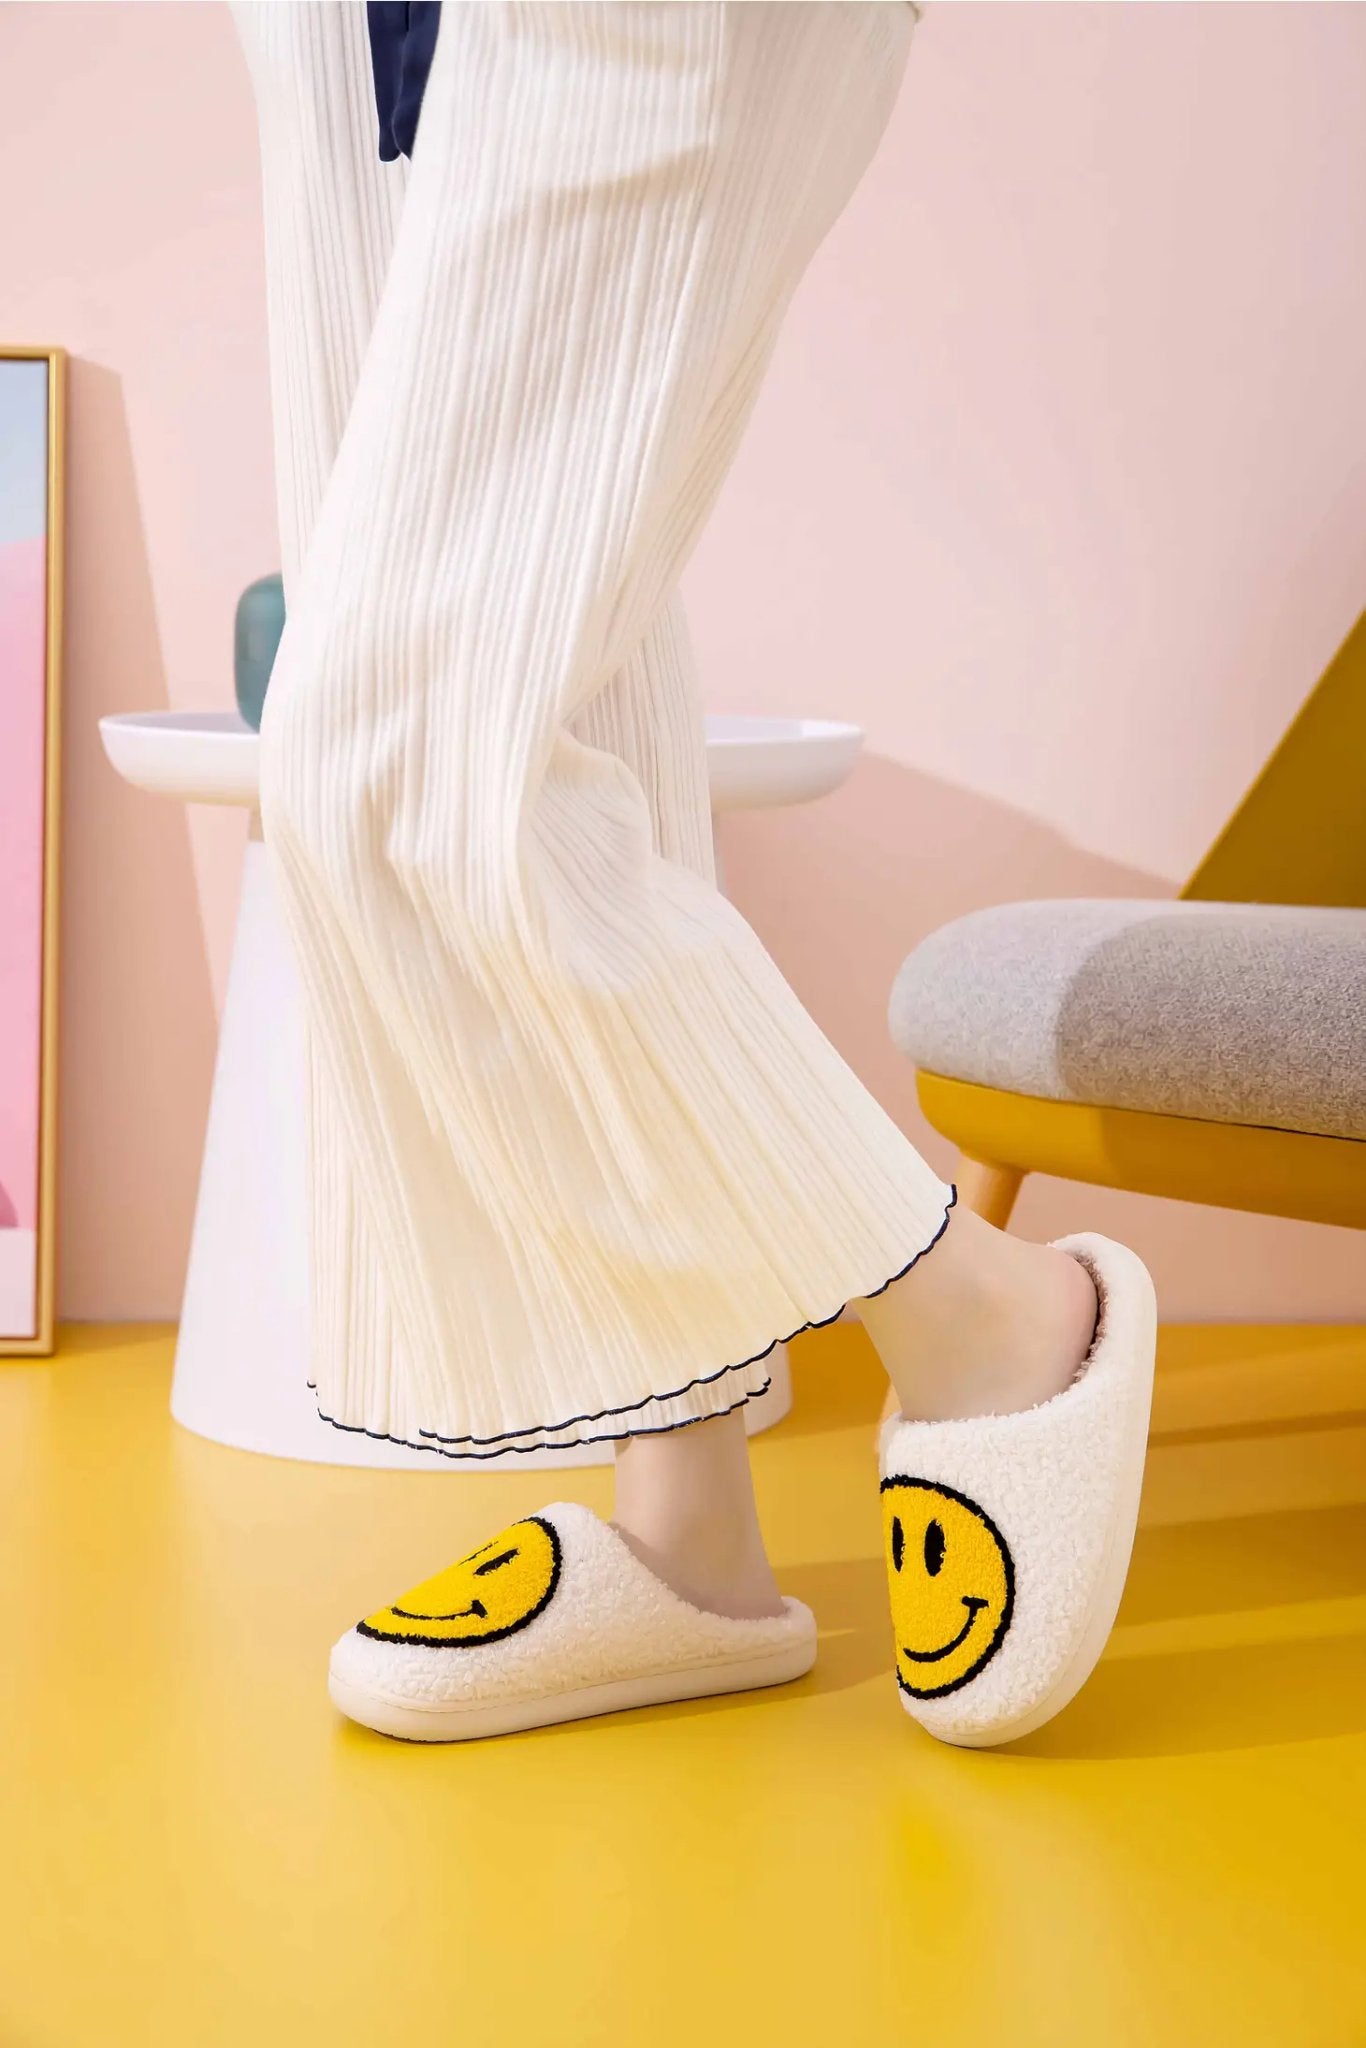 Smiley Face Fluffy Slippers (White) - Medium (6.5-7.5/39-40) - Slippers